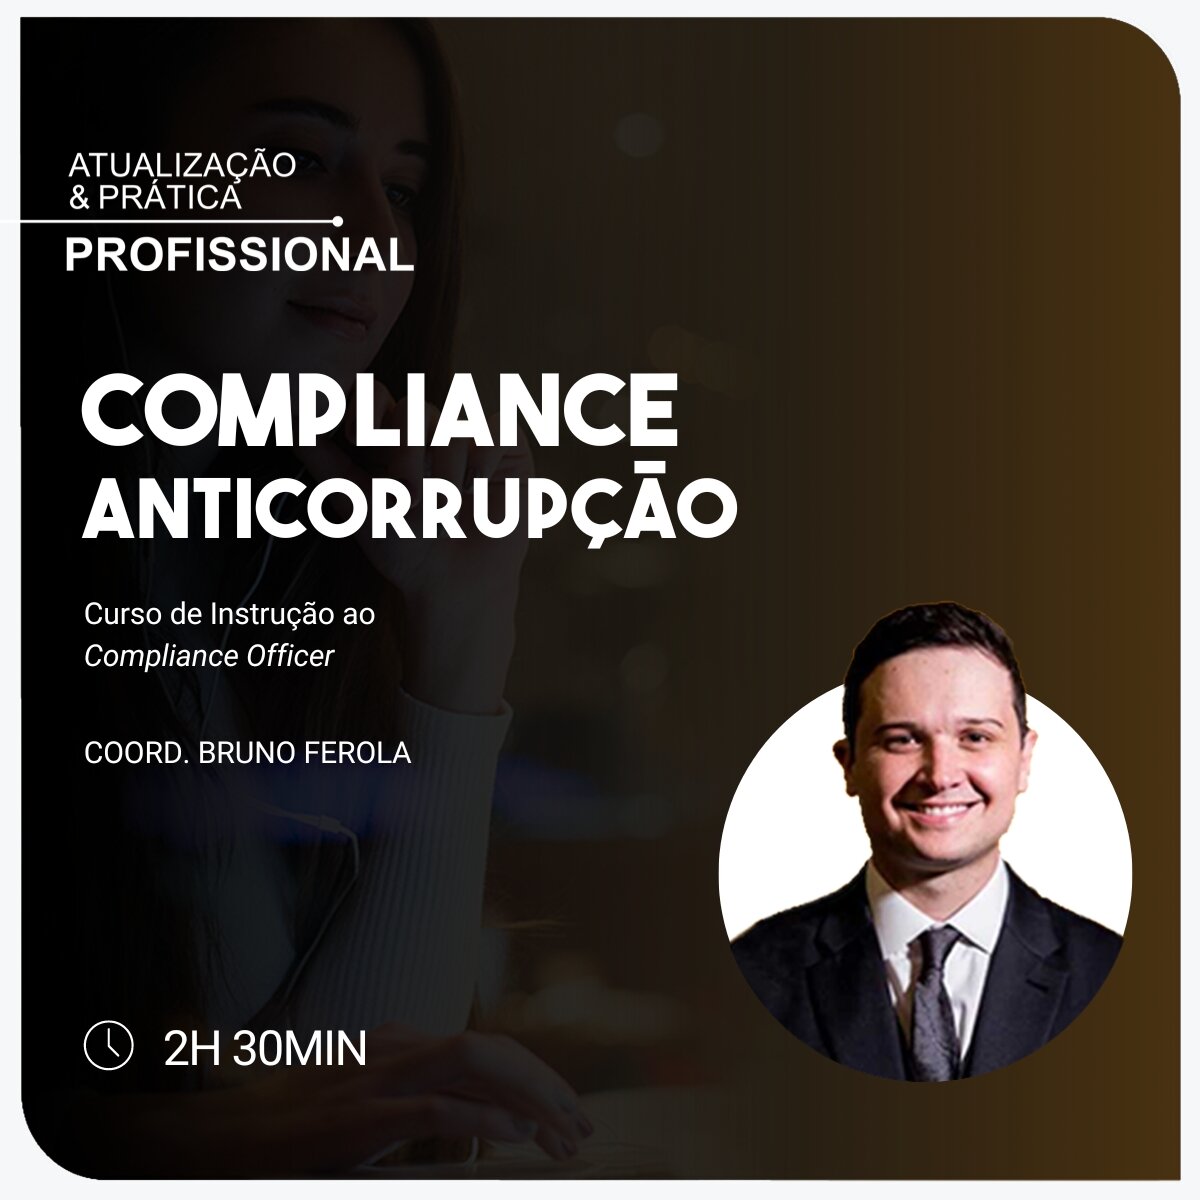 Compliance Anticorrupção - Curso de Instrução  ao Compliance Officer